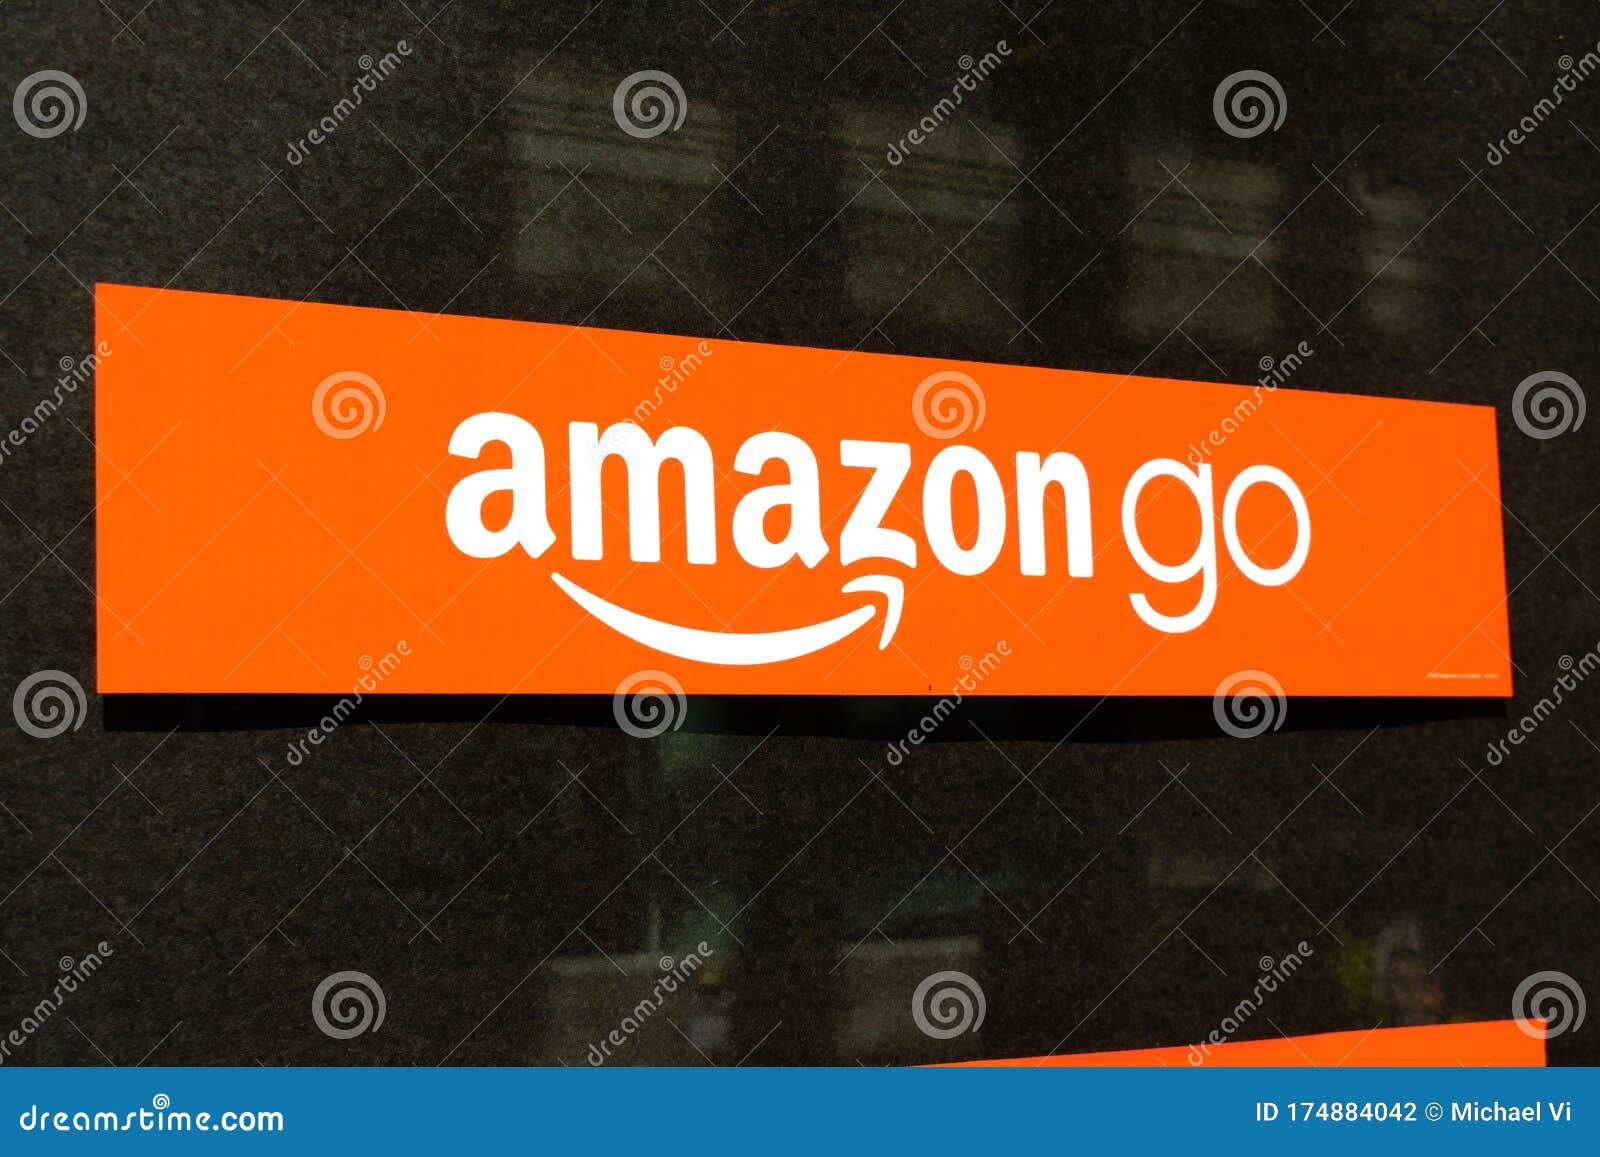 Amazon Go登录商店窗口amazon Go是一个无现金便利店链 由亚马逊运营 并实现自动结帐图库摄影片 图片包括有商业 登广告者做广告